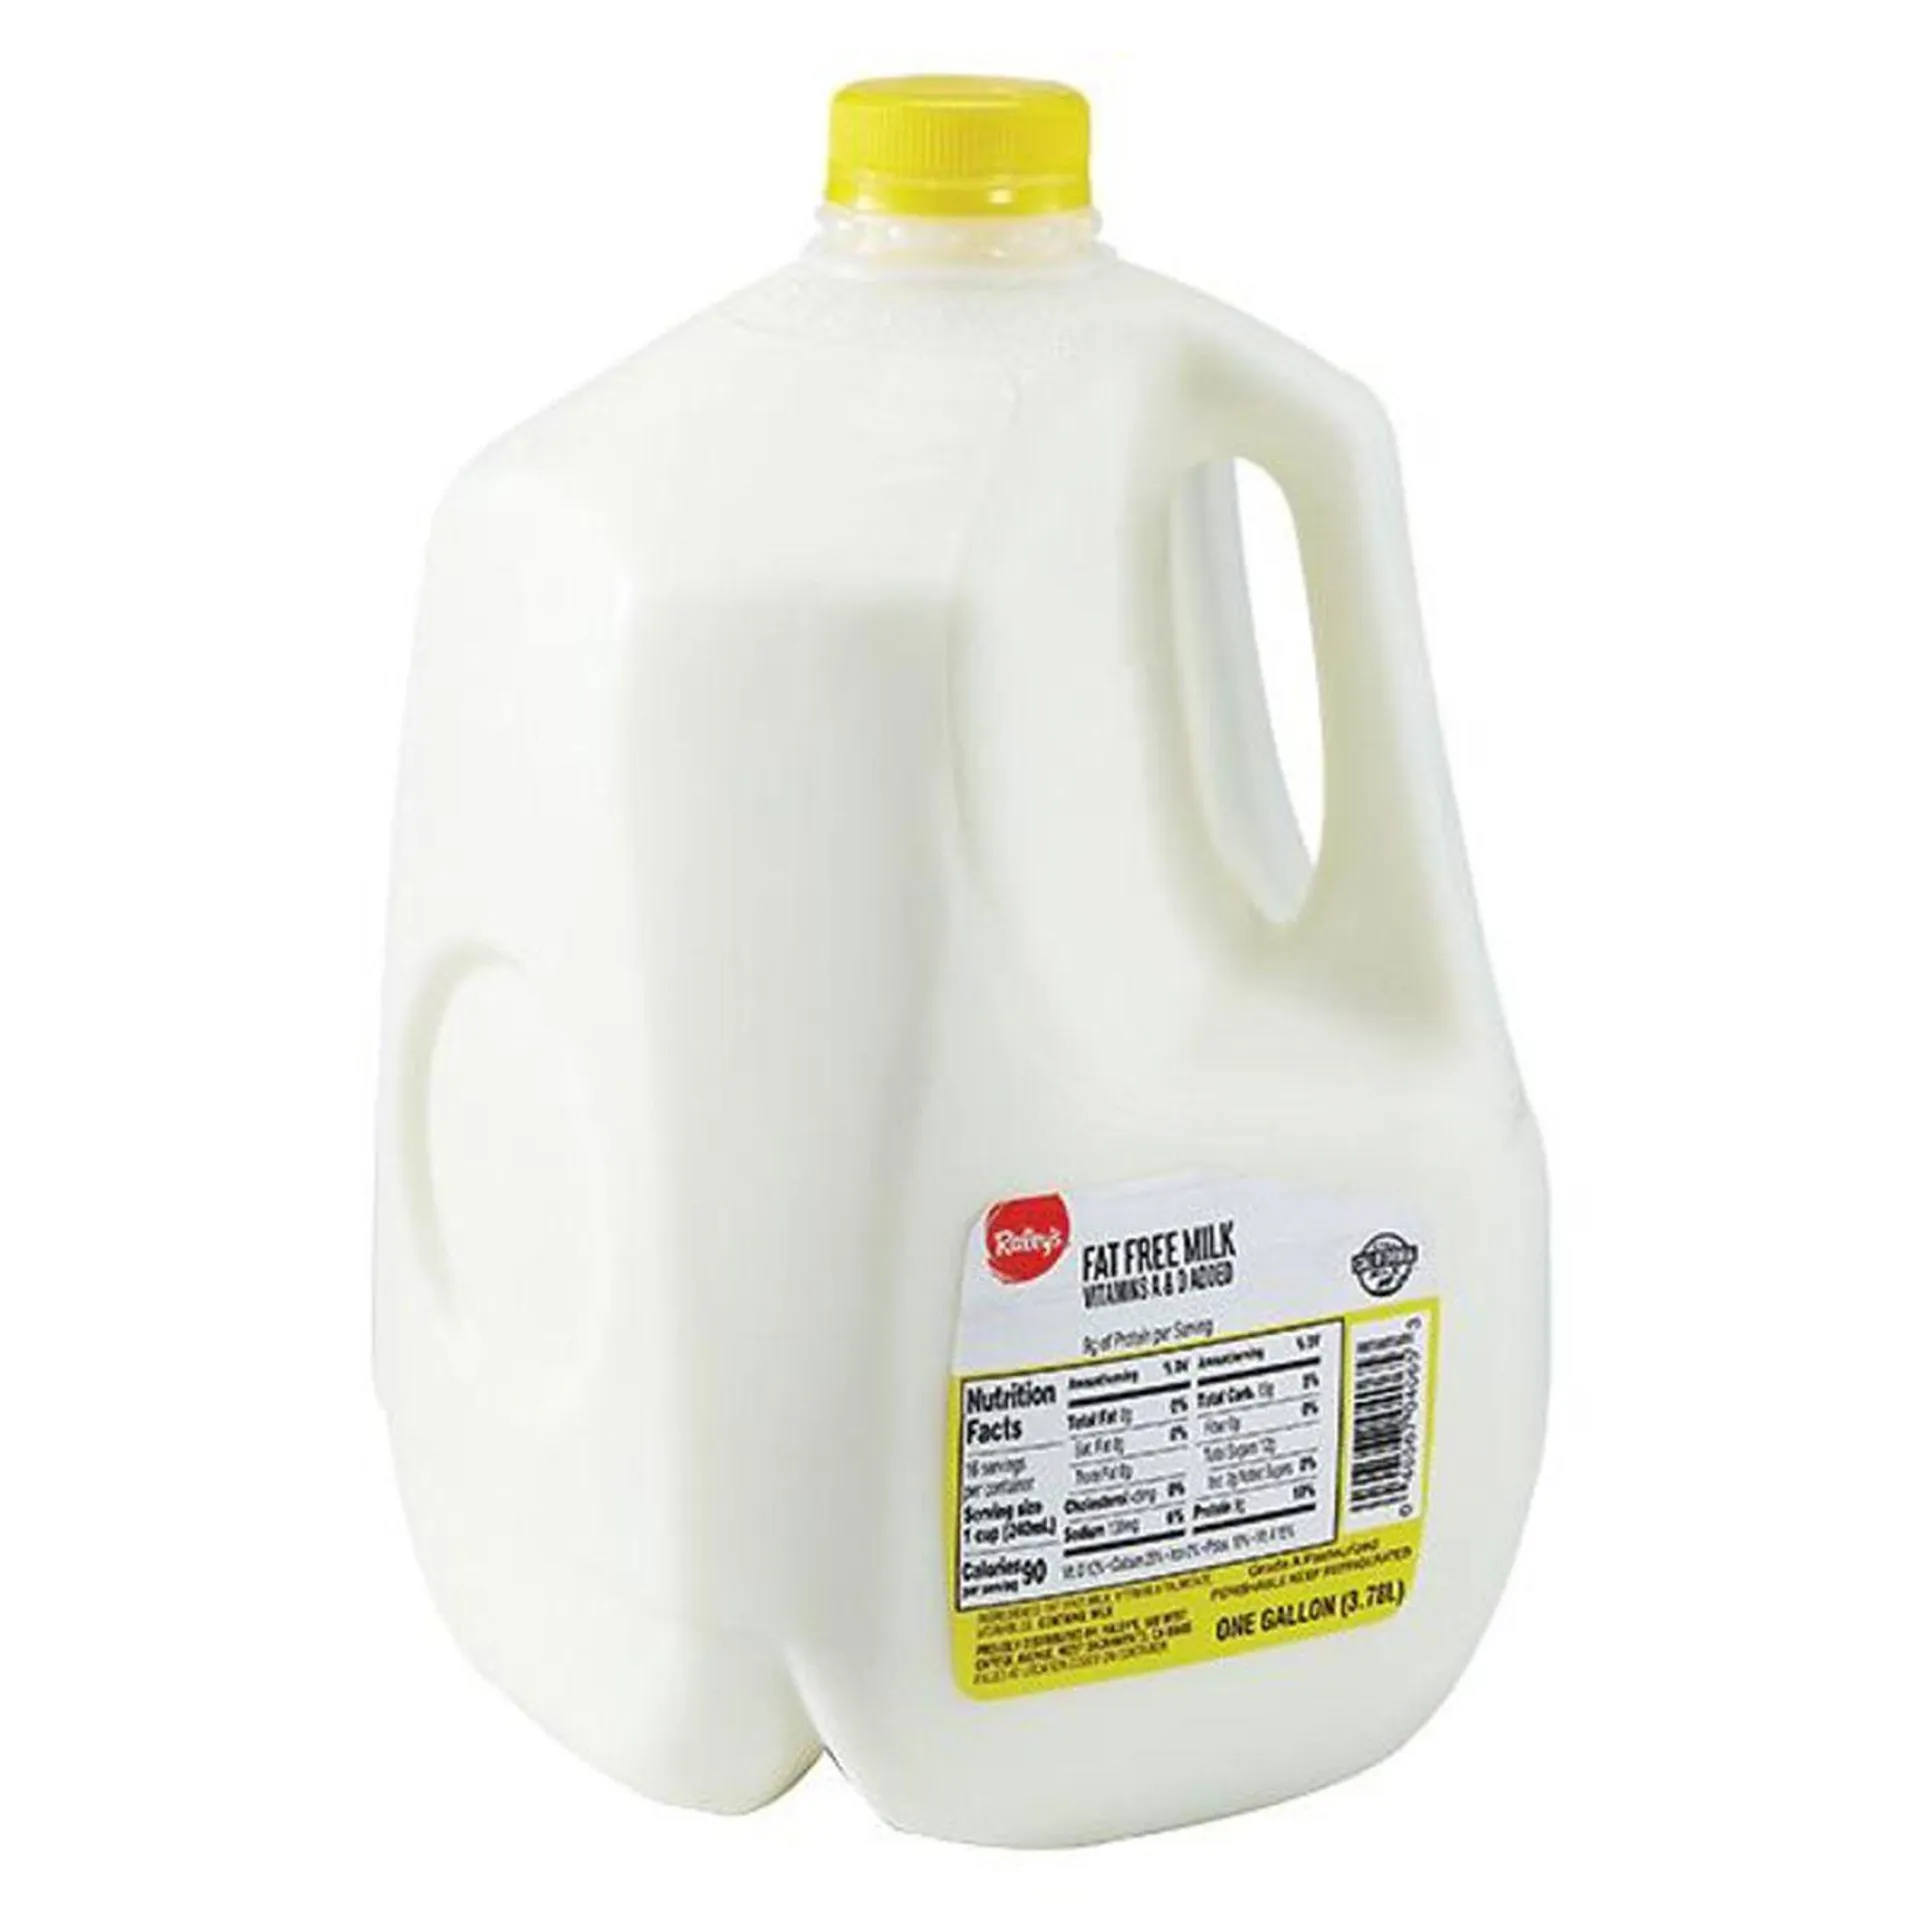 Raley's Fat Free Milk, 1 Gallon